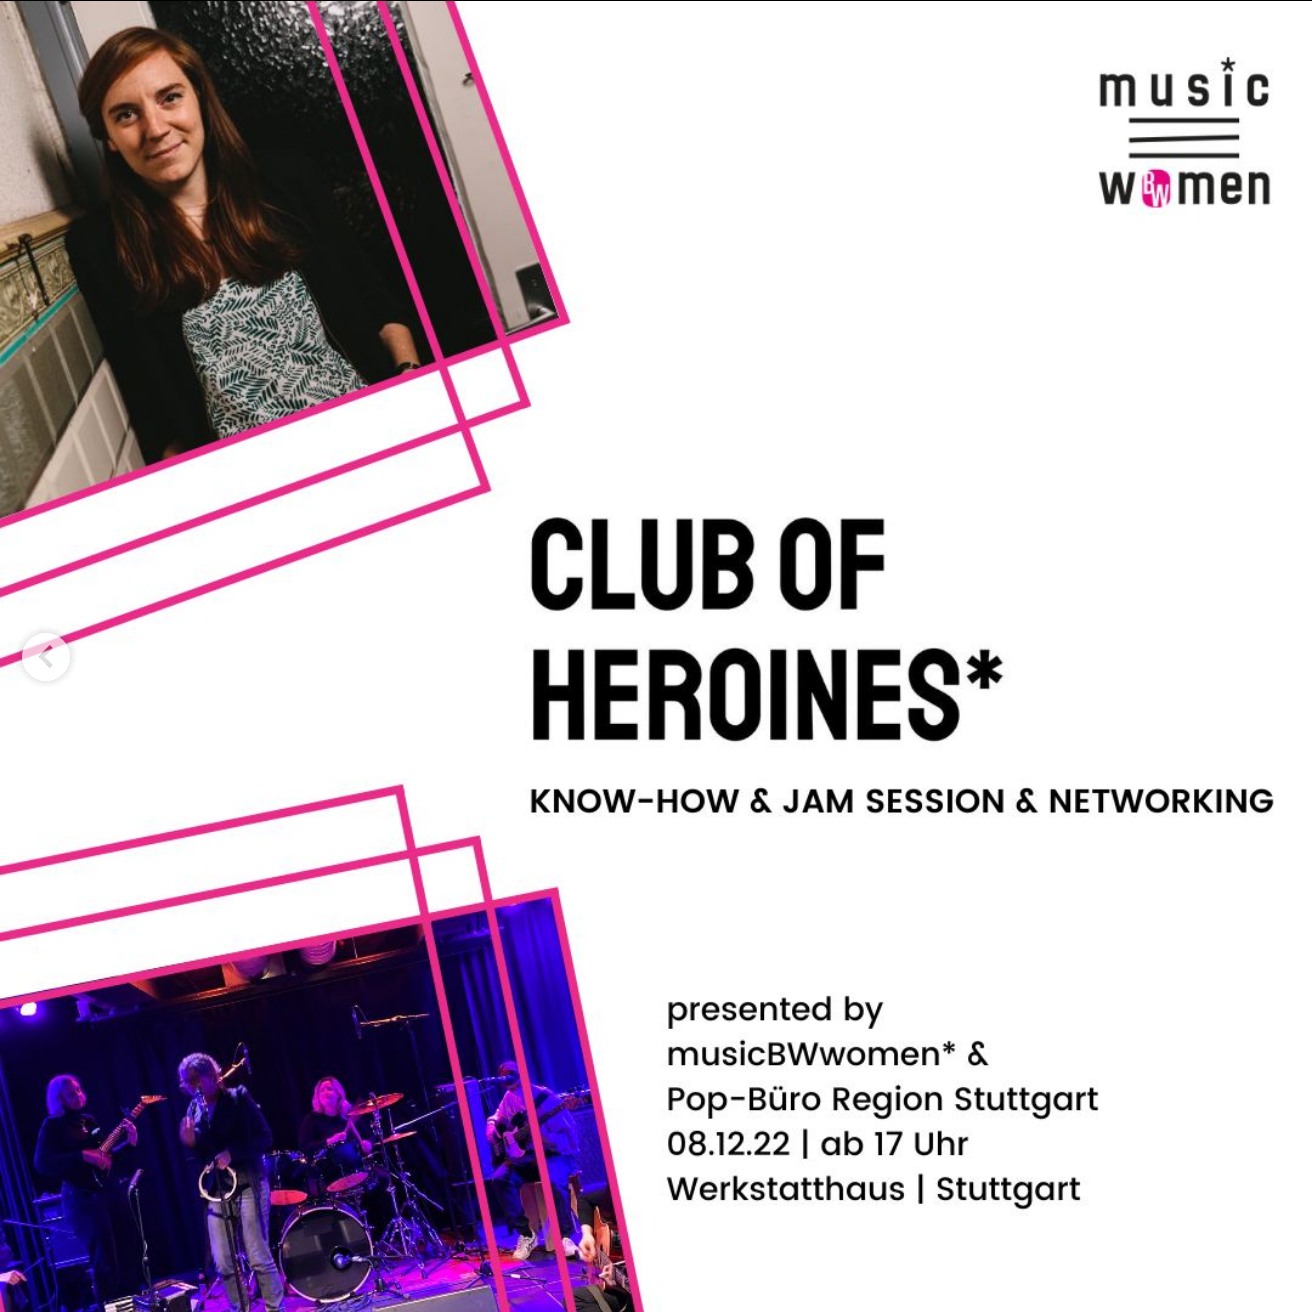  Club of Heroines* von musicBWwomen* 8.12. in Stuttgart